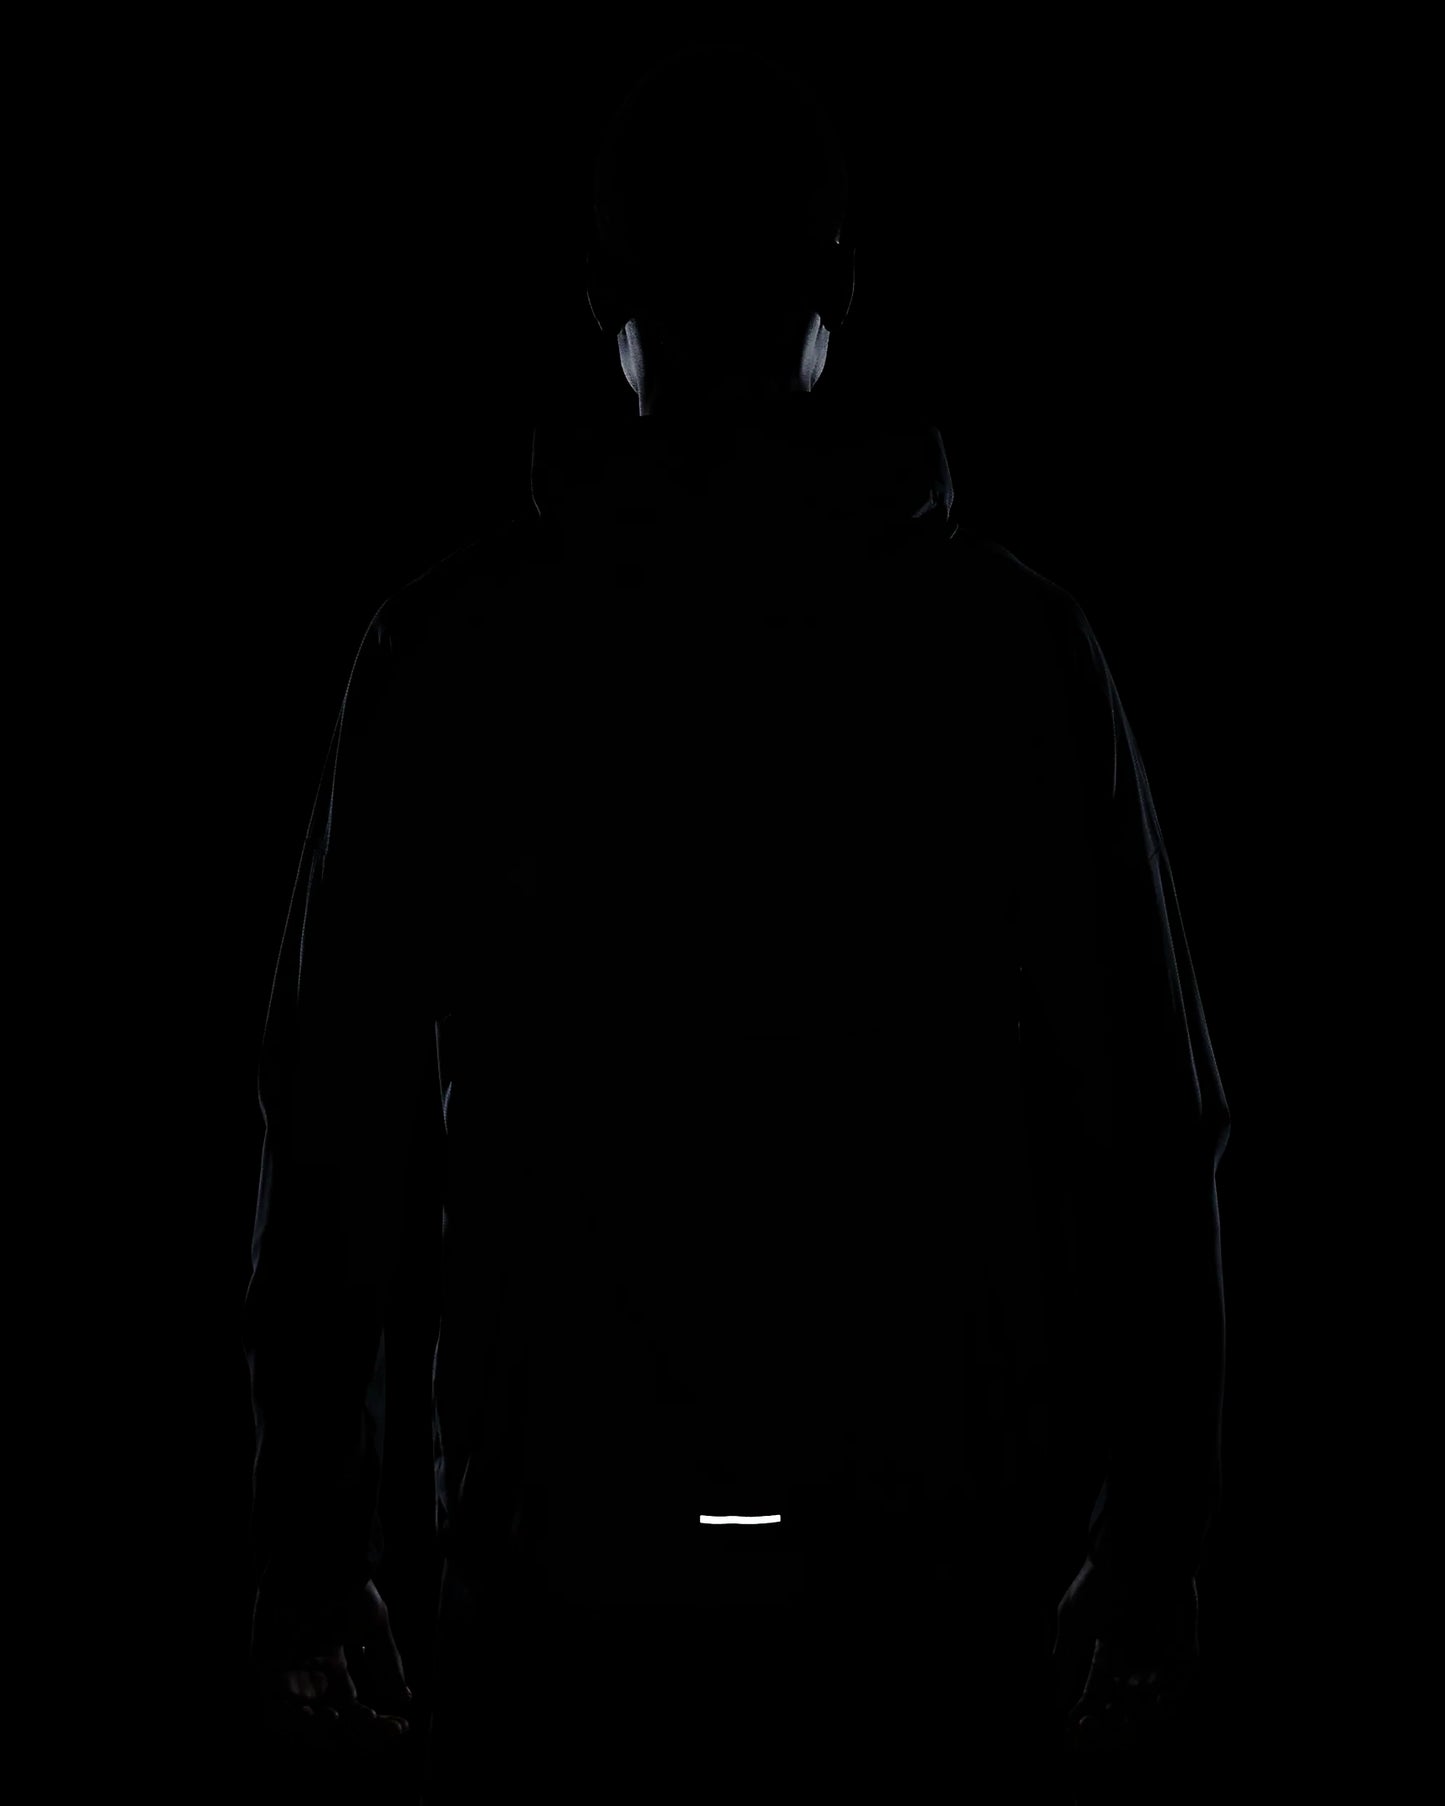 - Nike Windrunner Men's Repel Running Jacket - (FB7540-010) - JKT - C8